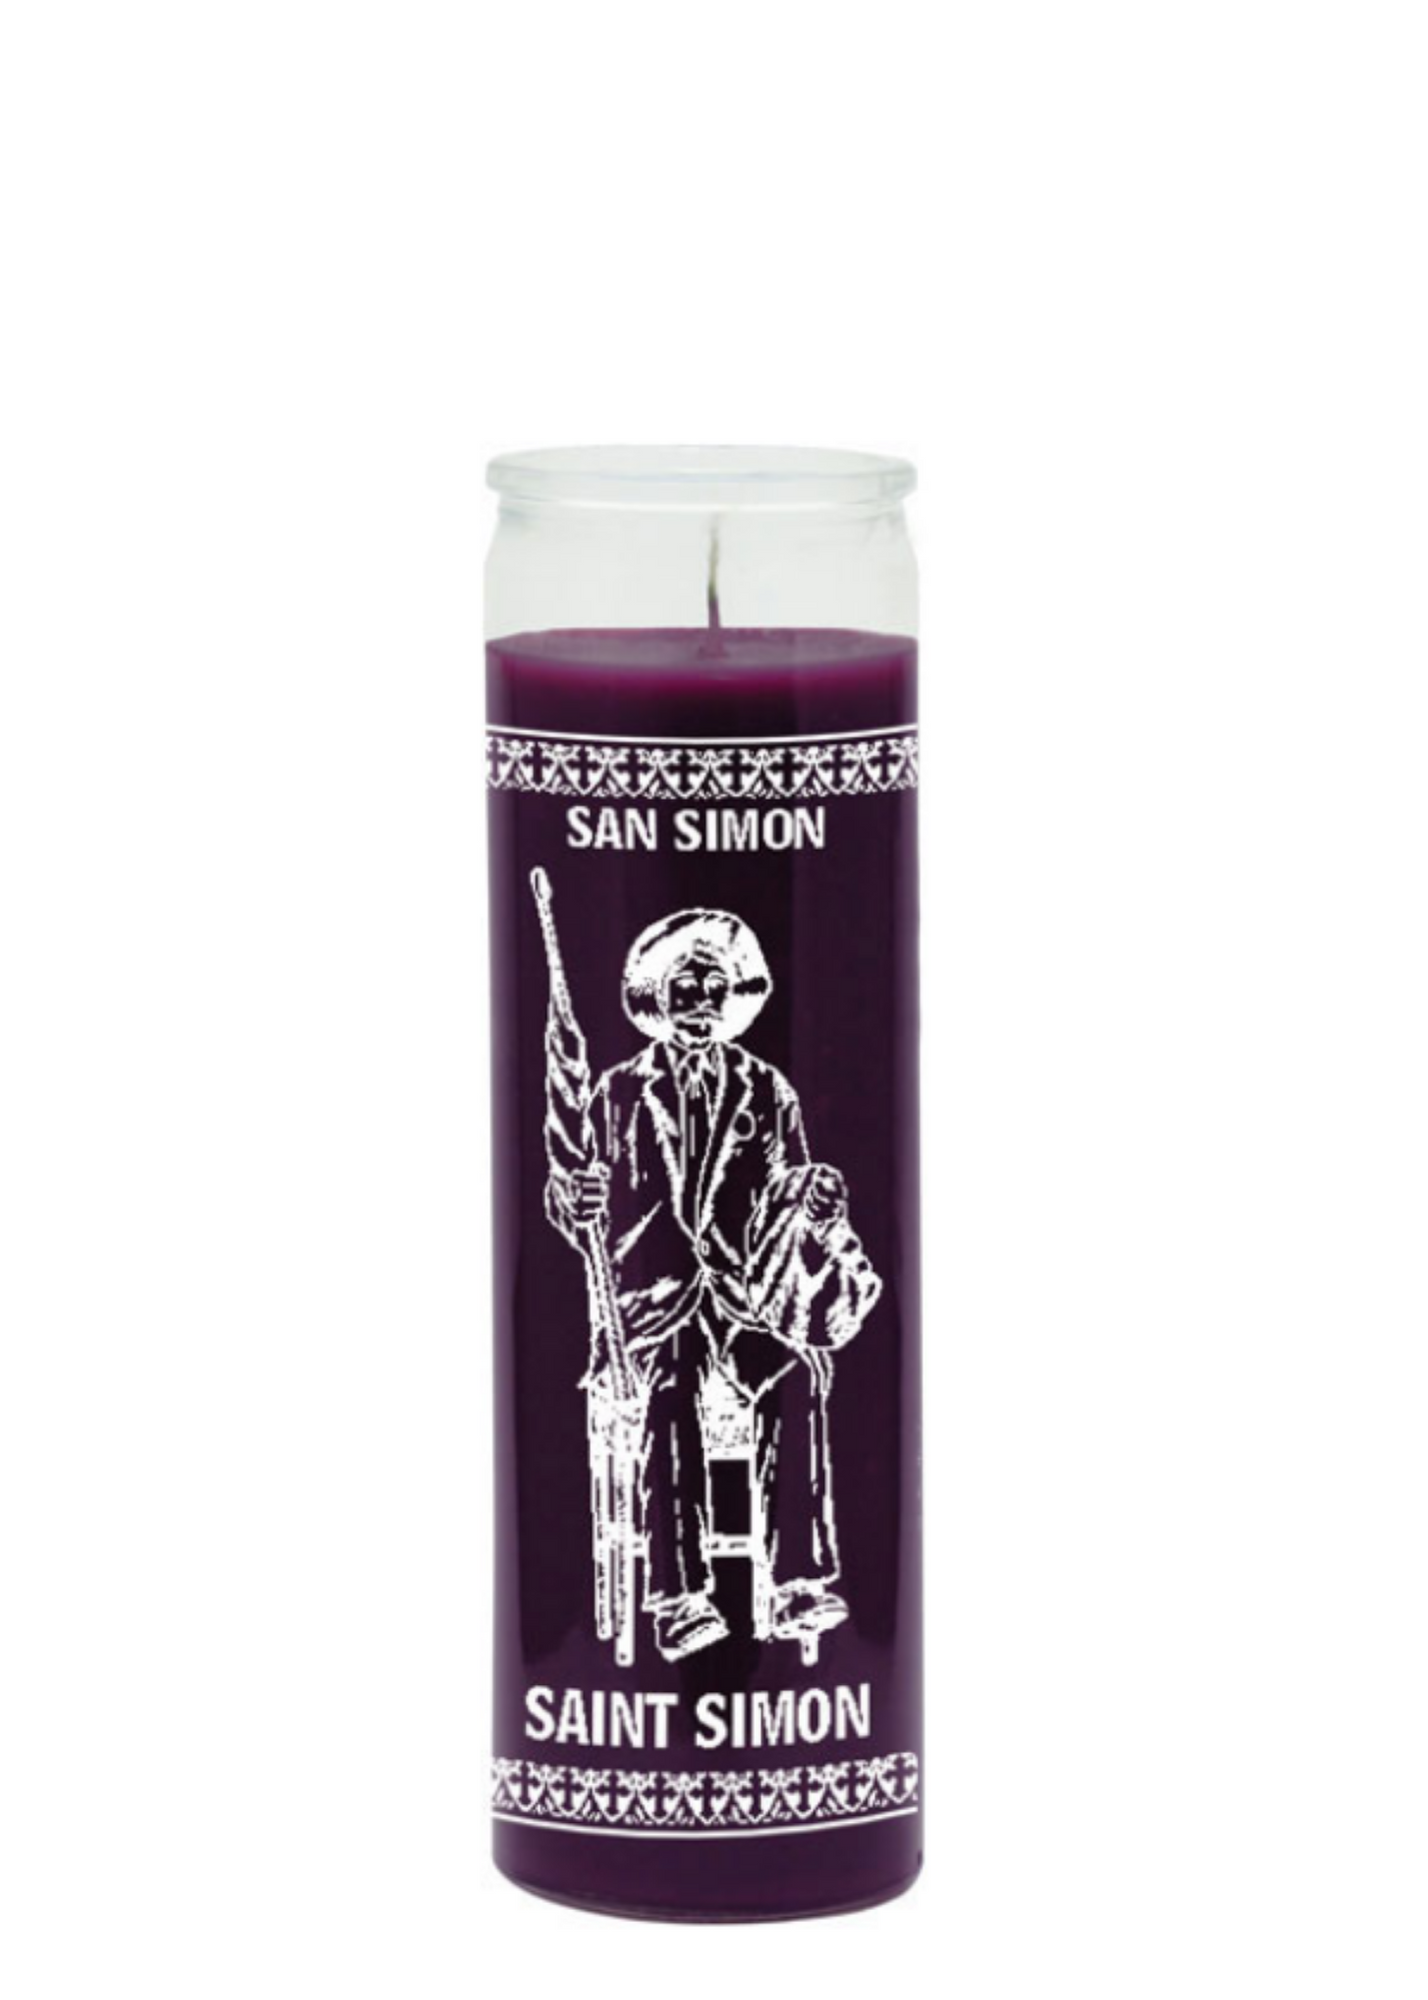 Saint Simon (Purple) 1 Color 7 Day Candle